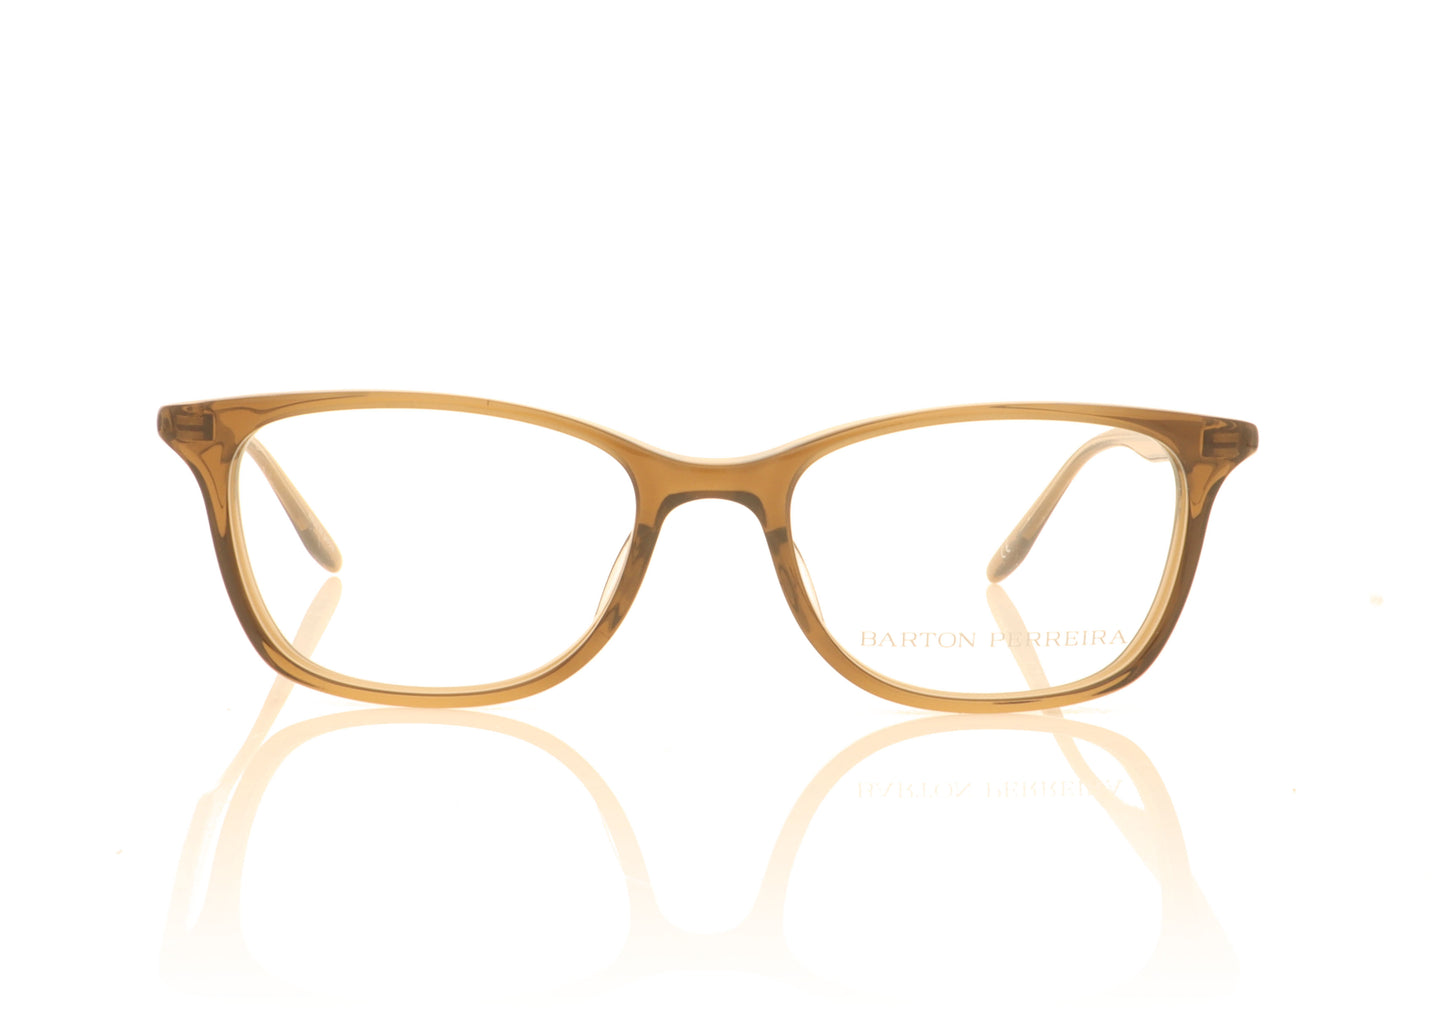 Barton Perreira Cassady CLV Clove Glasses - Front